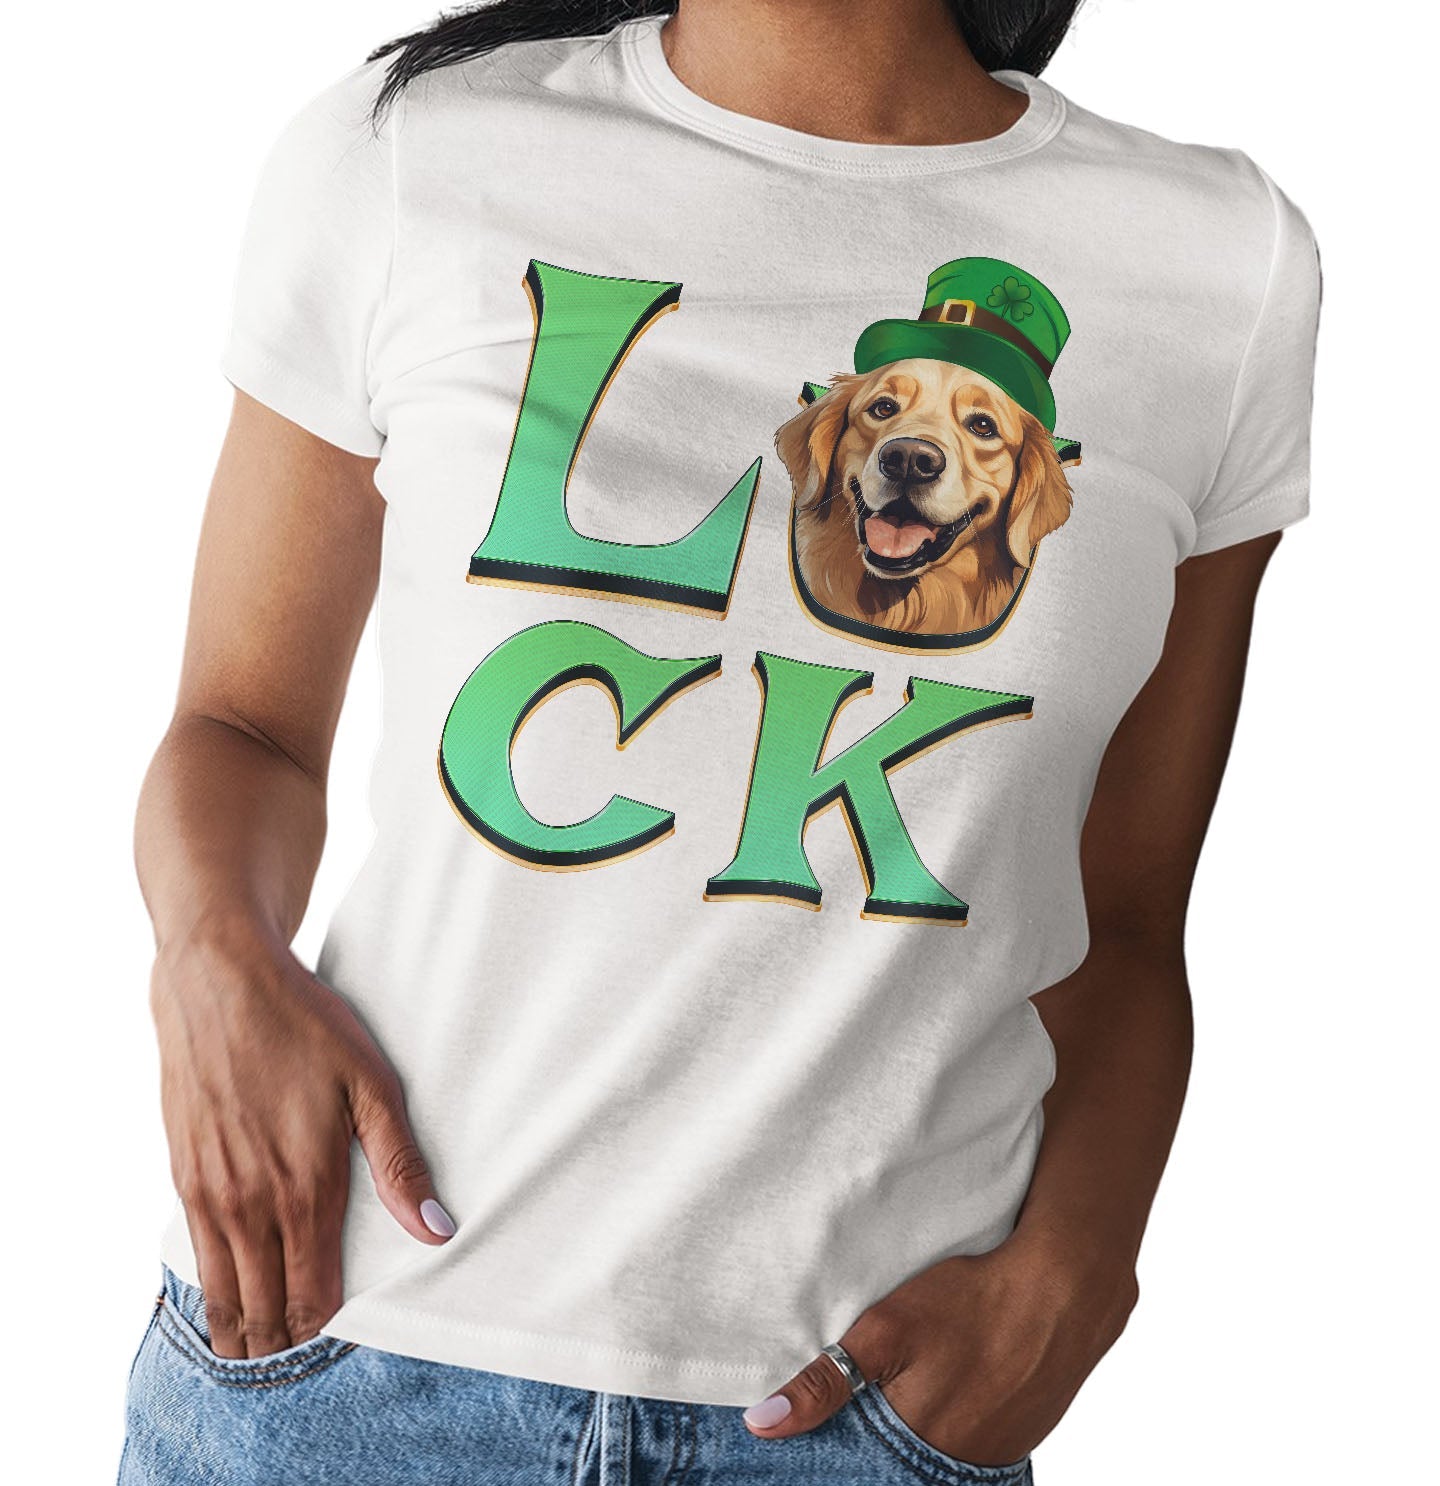 Big LUCK St. Patrick's Day Golden Retriever (Dark Golden) - Women's Fitted T-Shirt